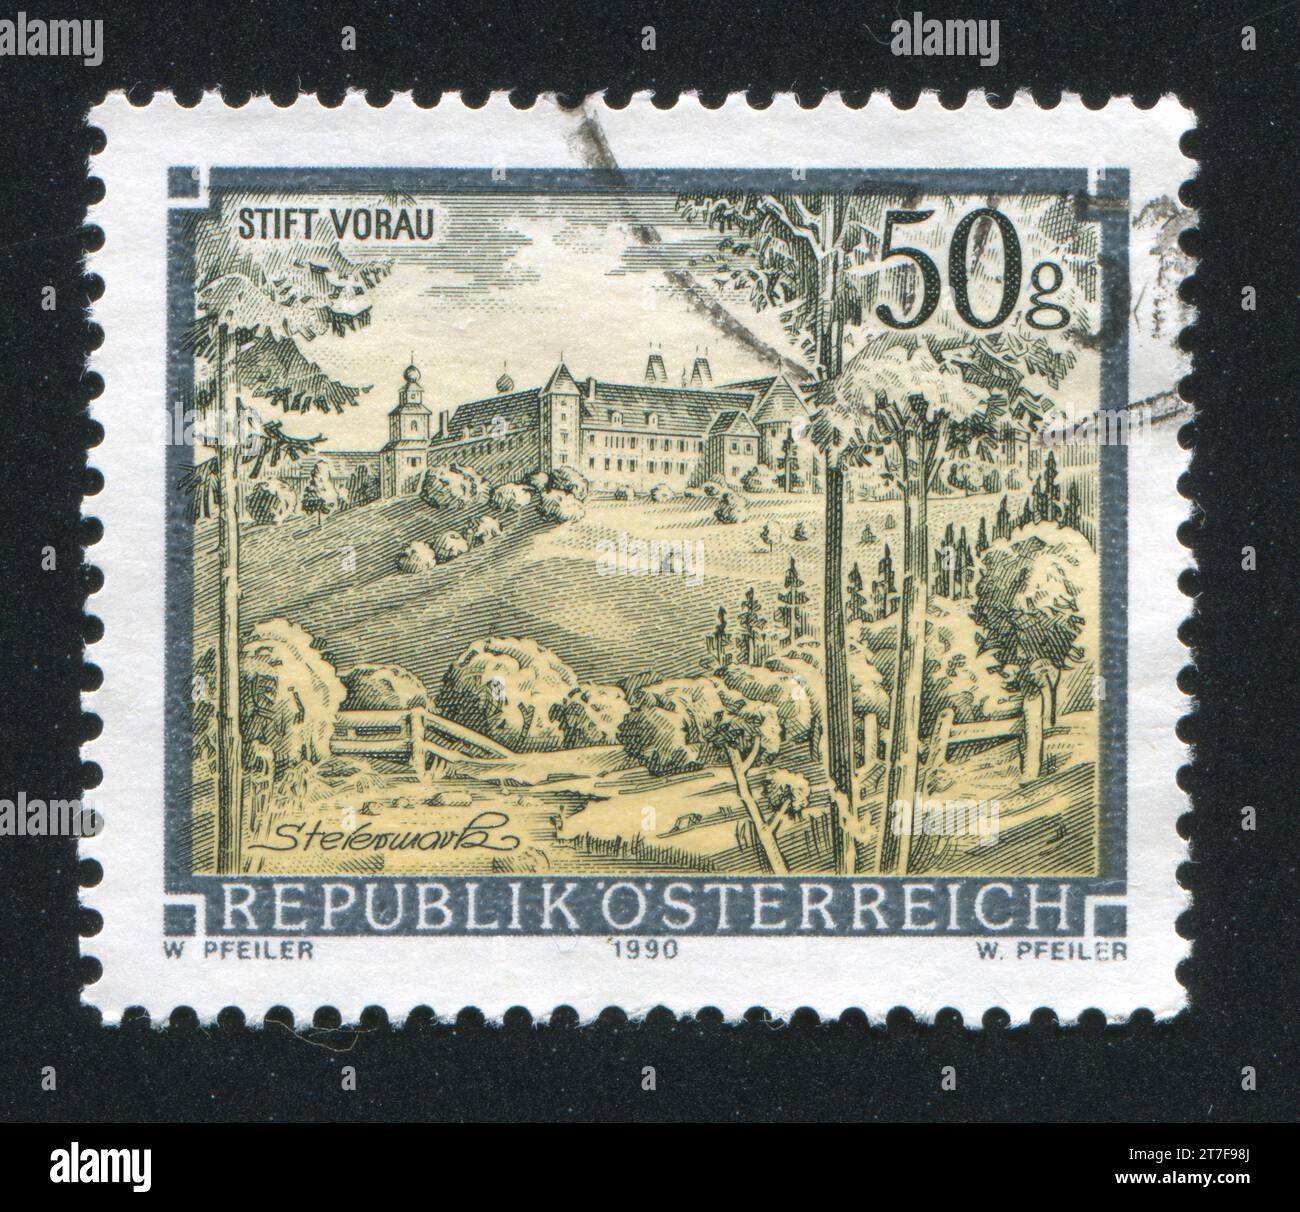 AUSTRIA - CIRCA 1990: stamp printed by Austria, shows Vorau abbey in Styria, circa 1990 Stock Photo